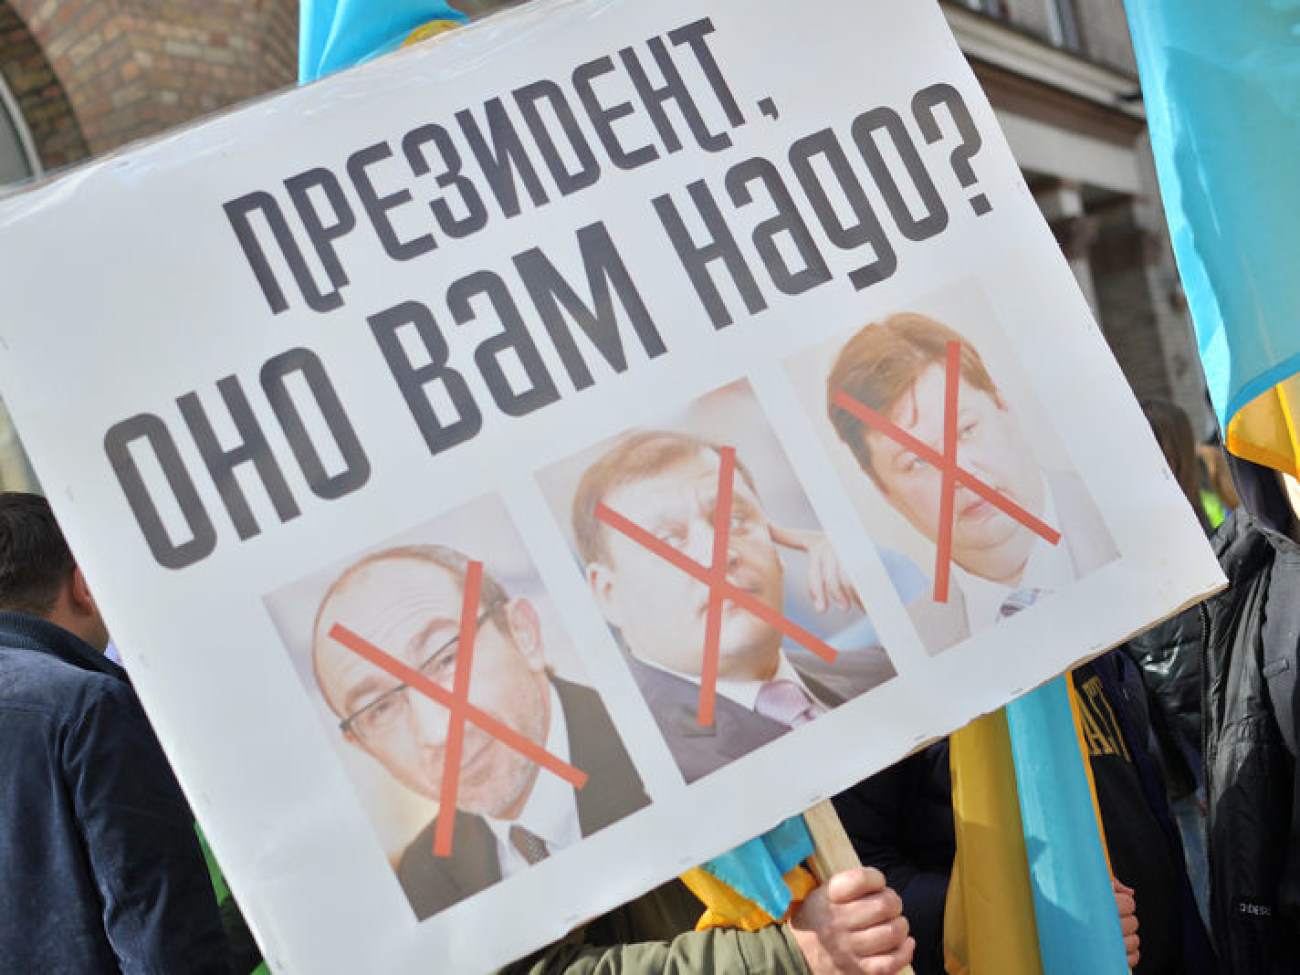 Жители Харькова перекрыли Крещатик, требуя встречи с Порошенко, 25 сентября 2014г.